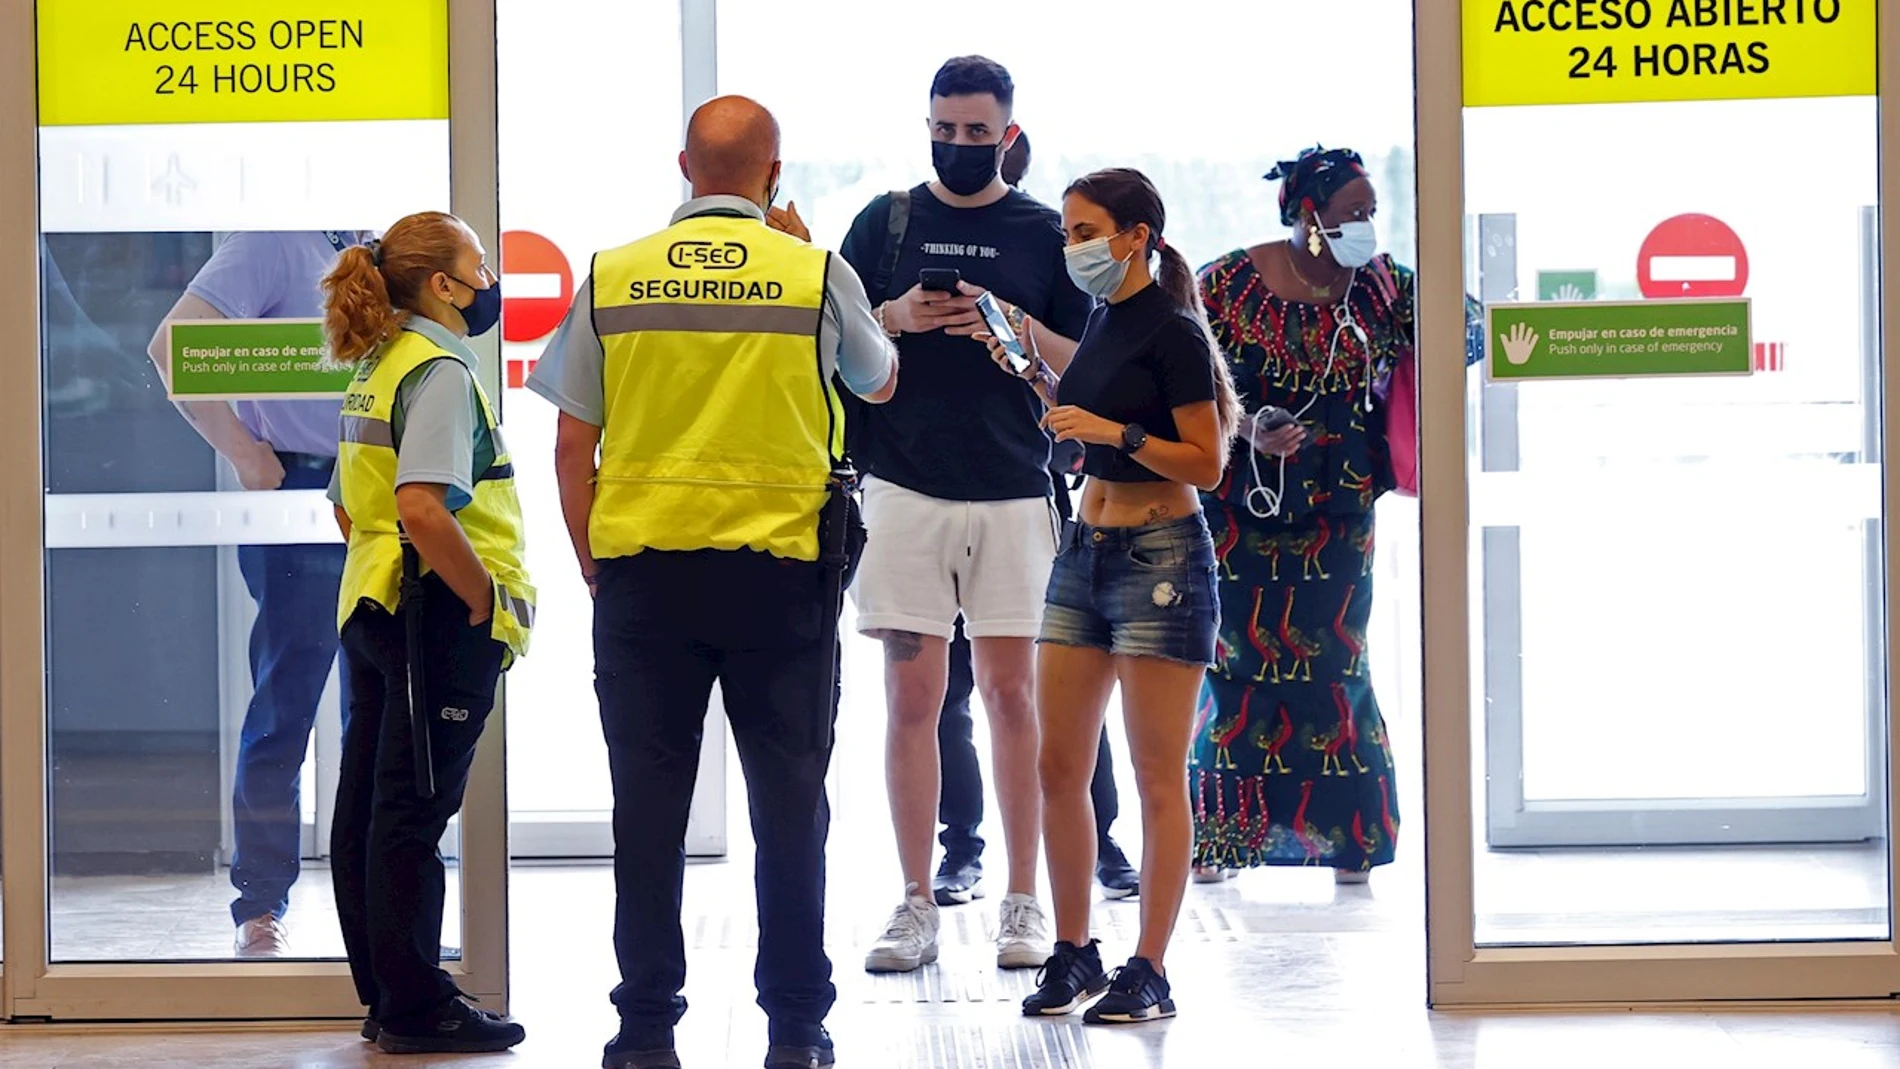 Pasajeros llegan al aeropuerto de Madrid Adolfo Suárez Barajas este jueves, fecha de inicio de la operación salida, que coincide con la reapertura de las terminales T2 y T3, con las que el aeropuerto recupera toda su operativa tras el cierre por la pandemia del coronavirus